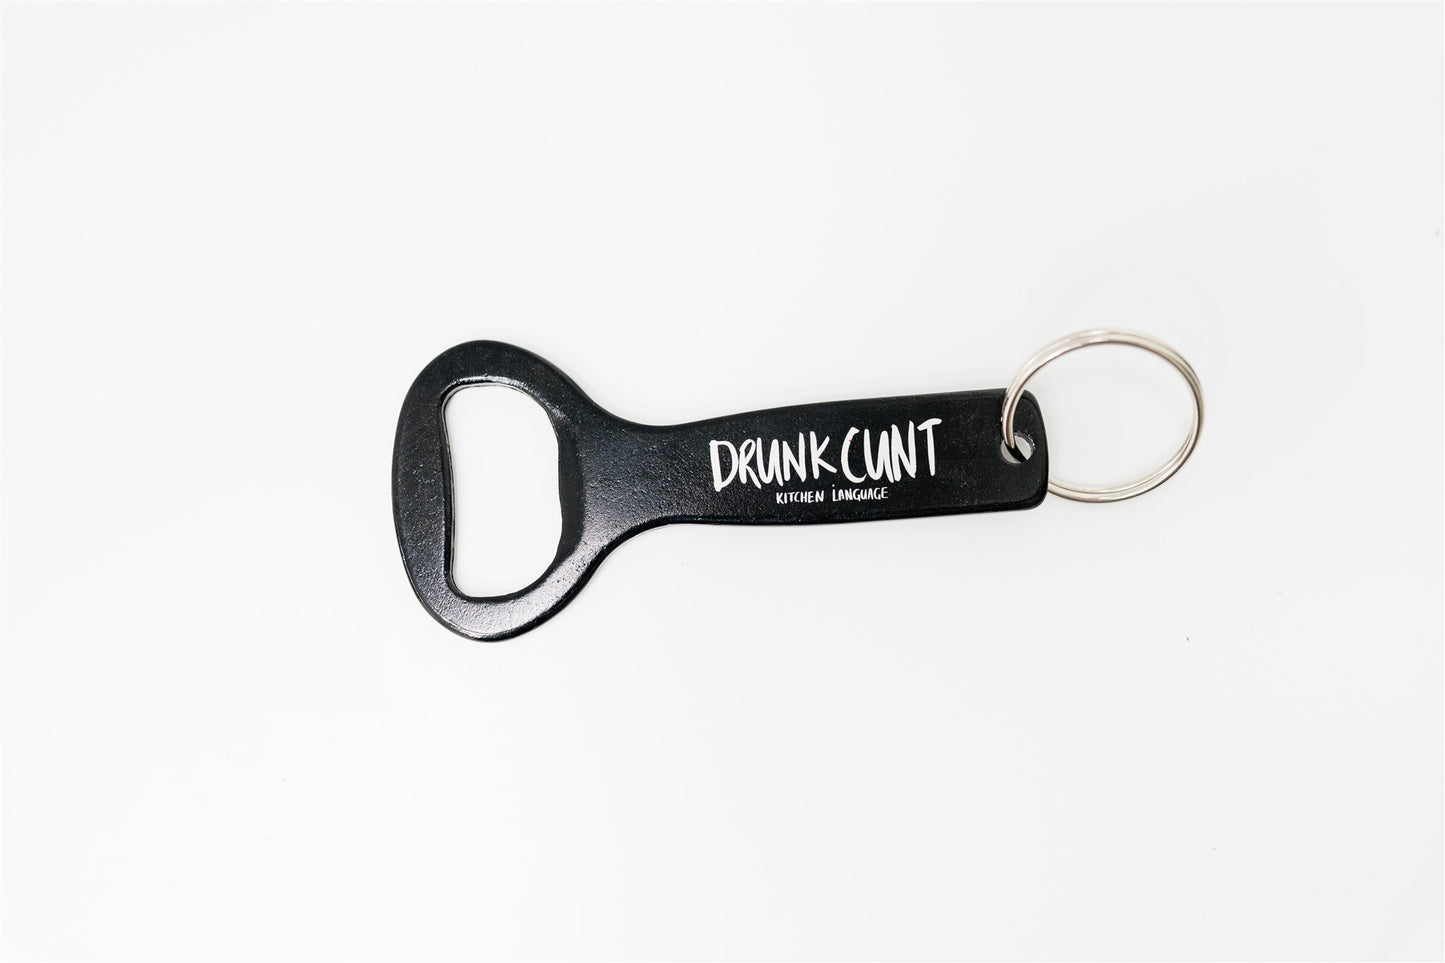 Drunk Cunt keyring bottle opener